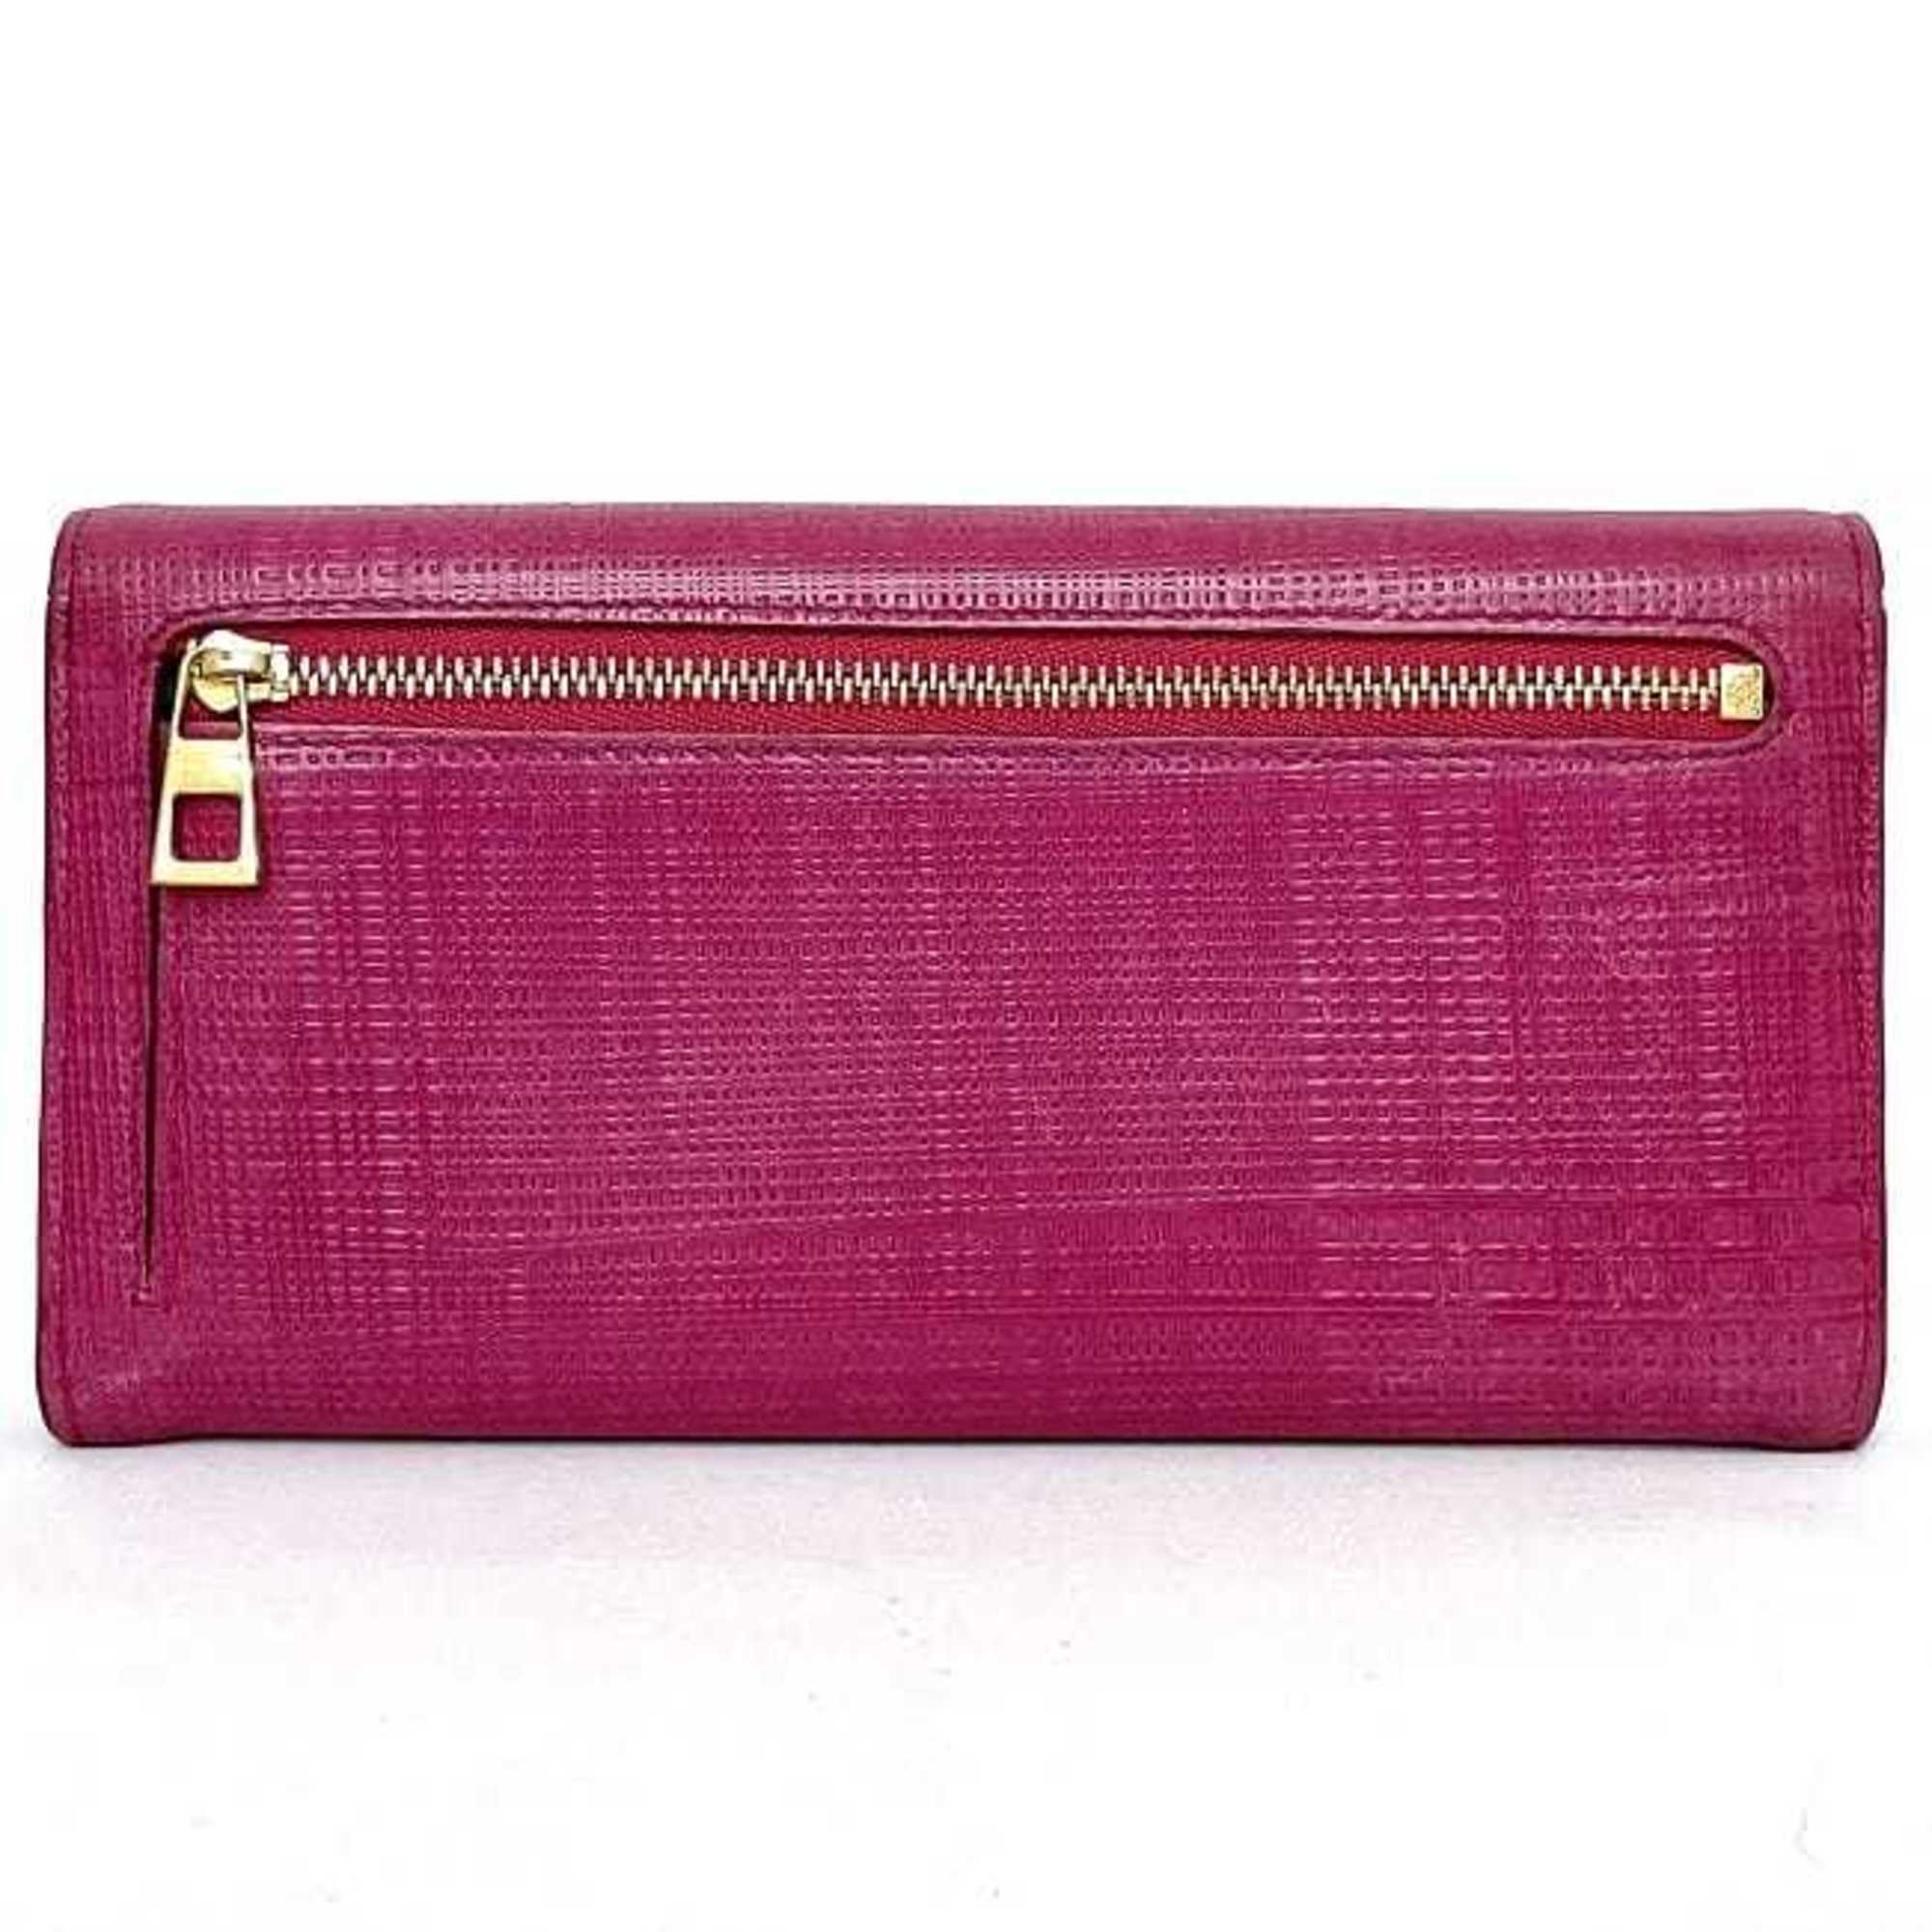 Loewe bi-fold long wallet pink linen anagram leather LOEWE flap embossed grain ladies